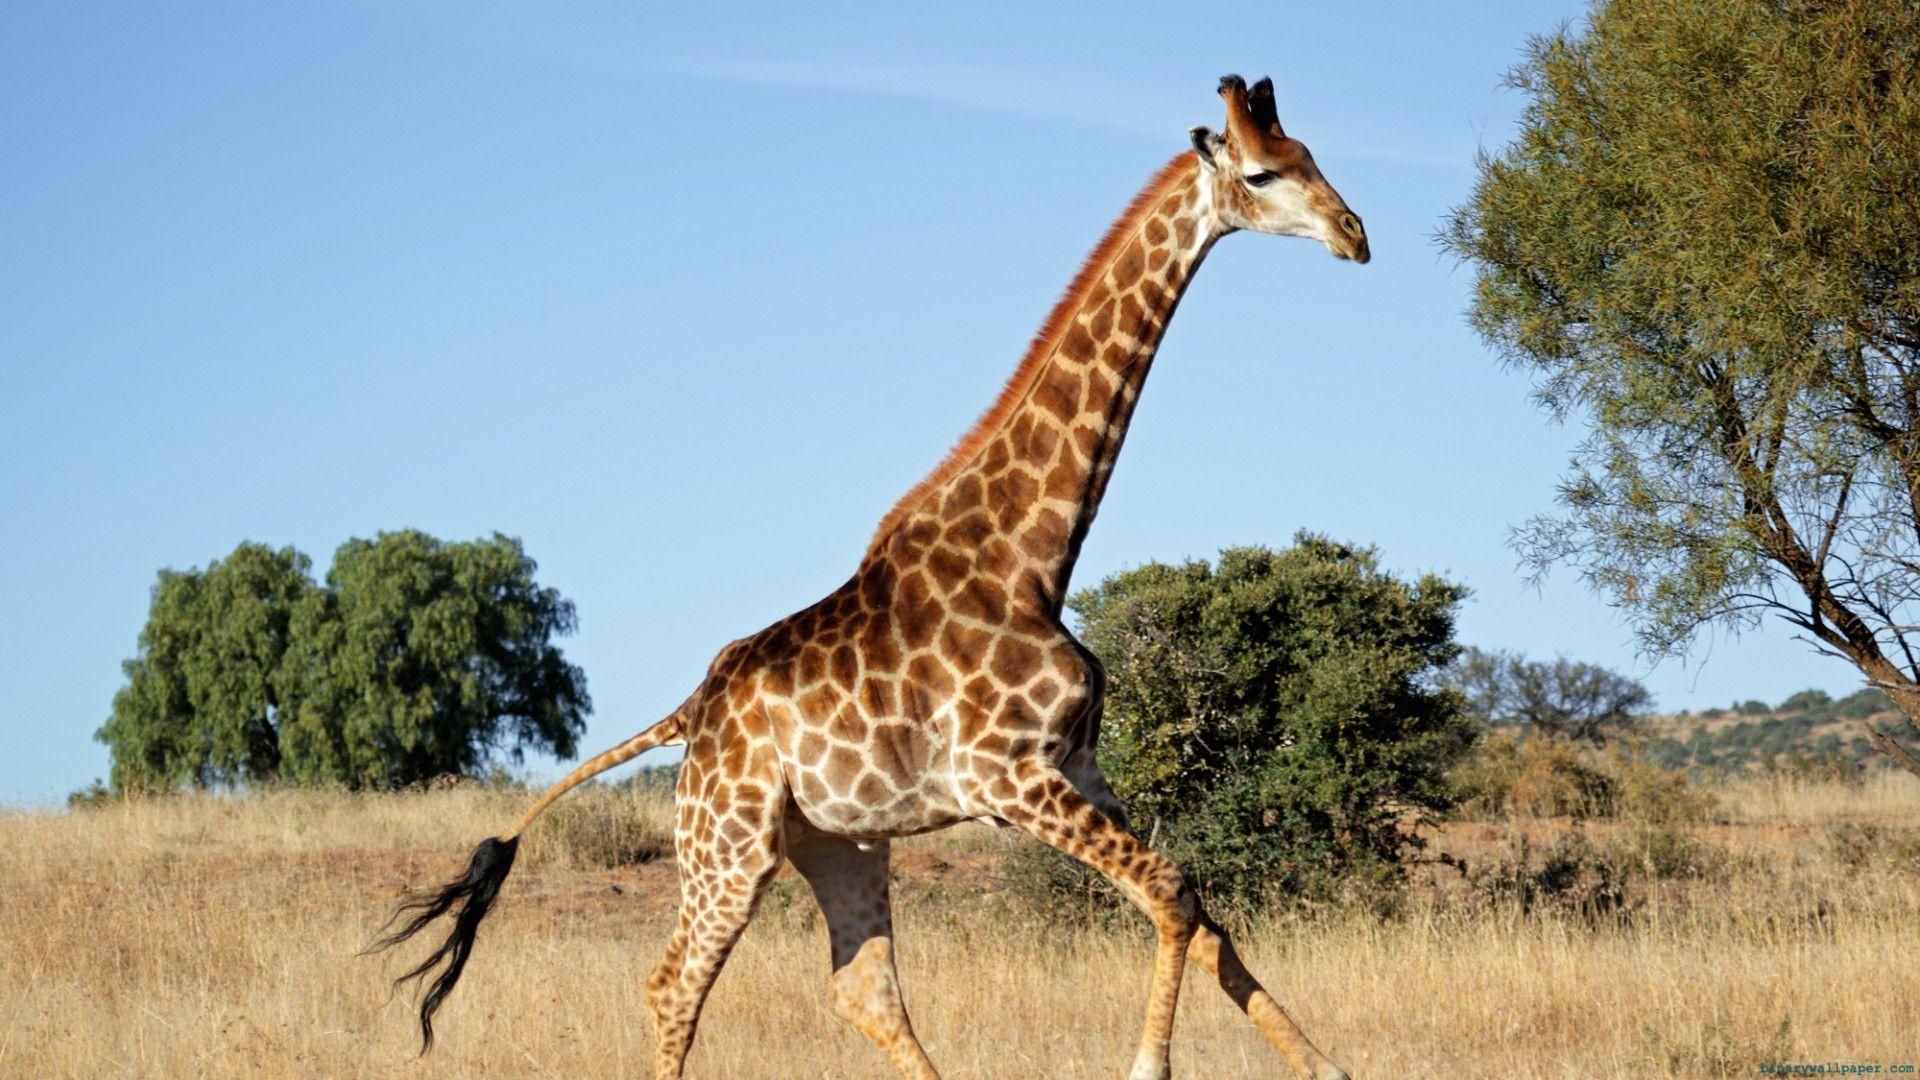 Wallpaper Of A Huge Walking Giraffe HD Giraffes Wallpapper Free